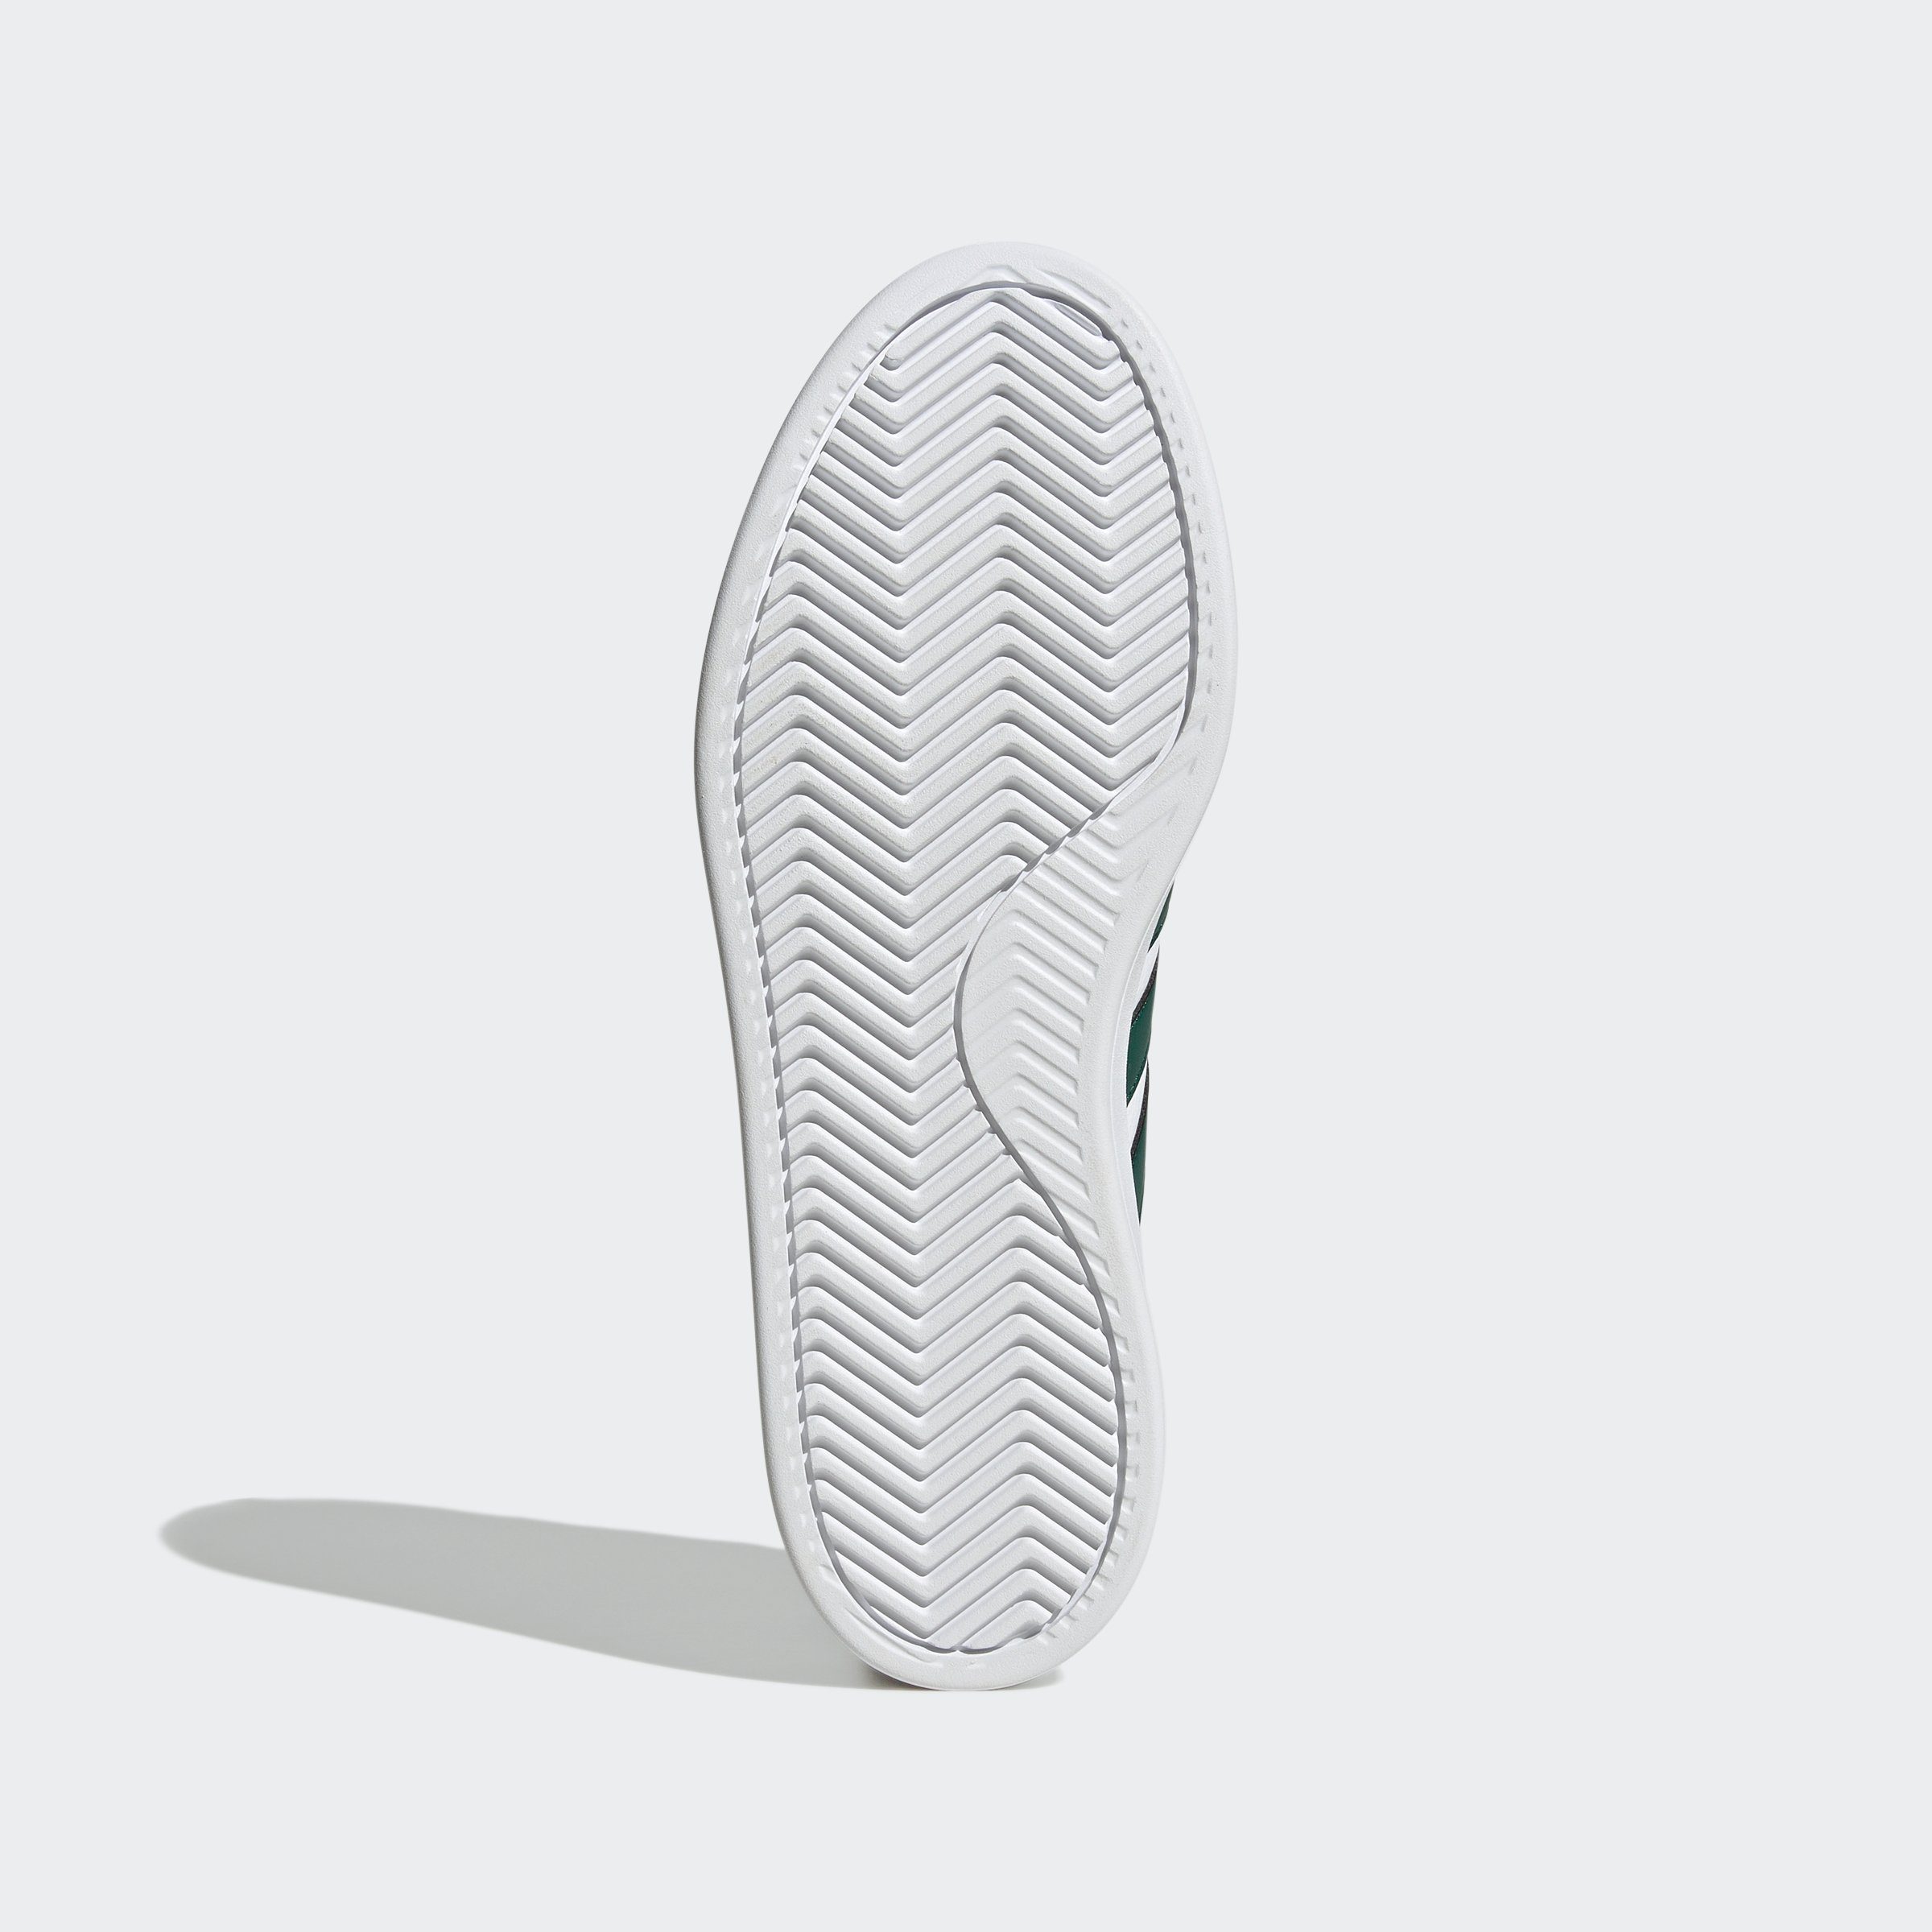 Green Collegiate Superstar Spuren adidas / White GRAND adidas COMFORT COURT des den Shadow Navy / CLOUDFOAM Cloud Sneaker Design auf Sportswear